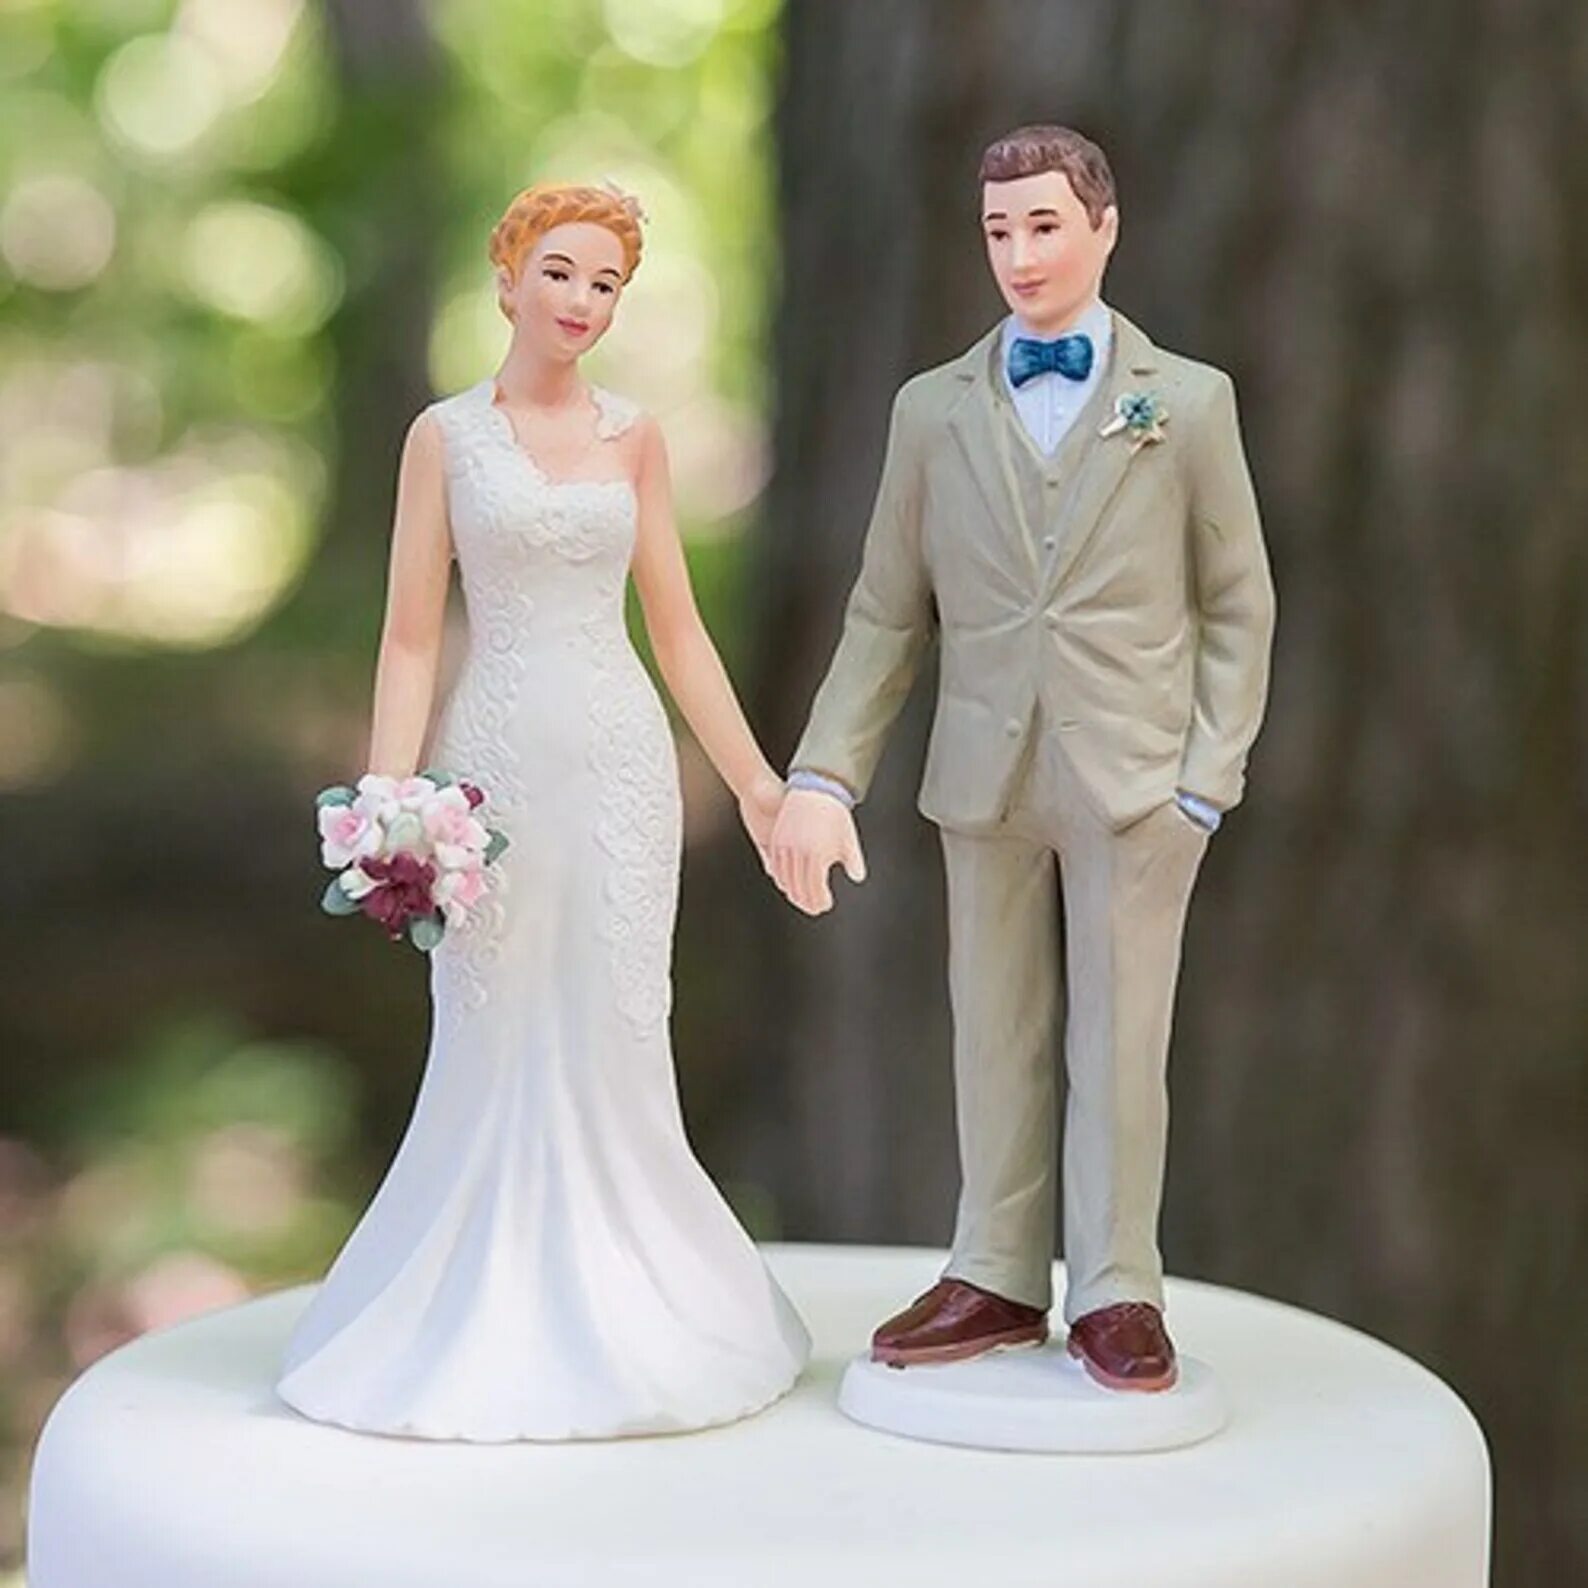 Фигурка жених и невеста. Свадебные фигурки жениха и невесты. Фигурки на свадебный торт. Фигурки жениха и невесты на торт.